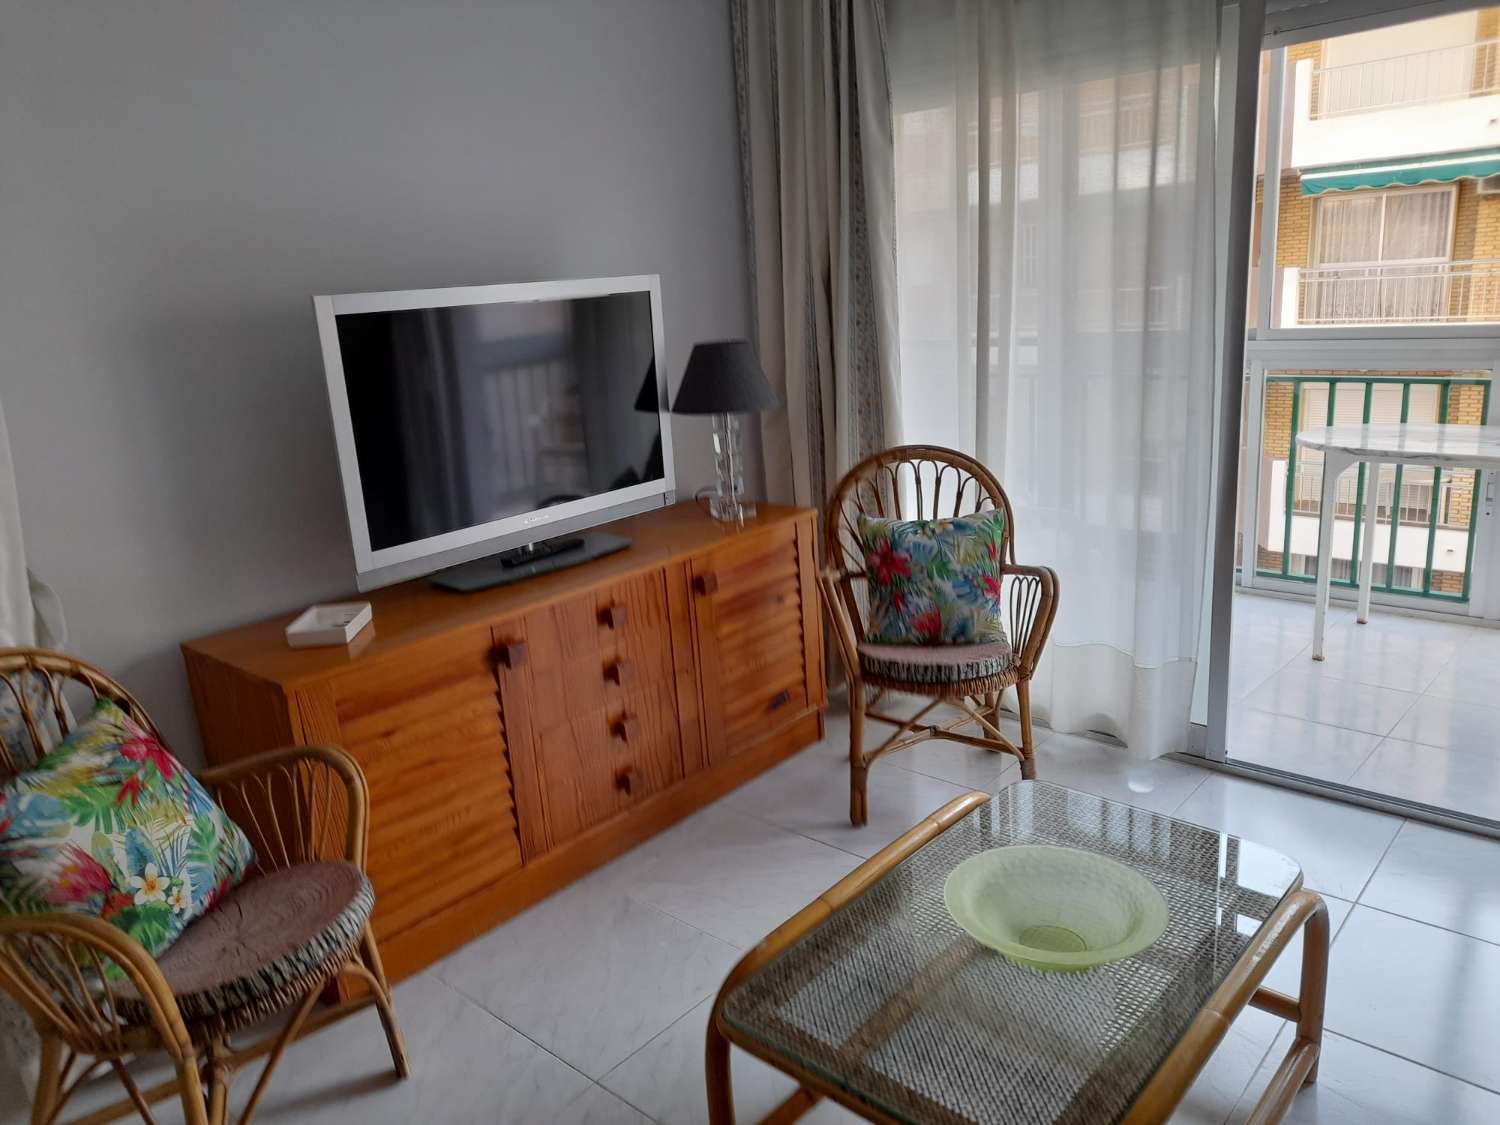 Te huur MIDDENSEIZOEN van 01/09/2023 tot 30/06/2024 Mooi appartement met zijdelings uitzicht op zee op de 2e lijn van het strand in Fuengirola